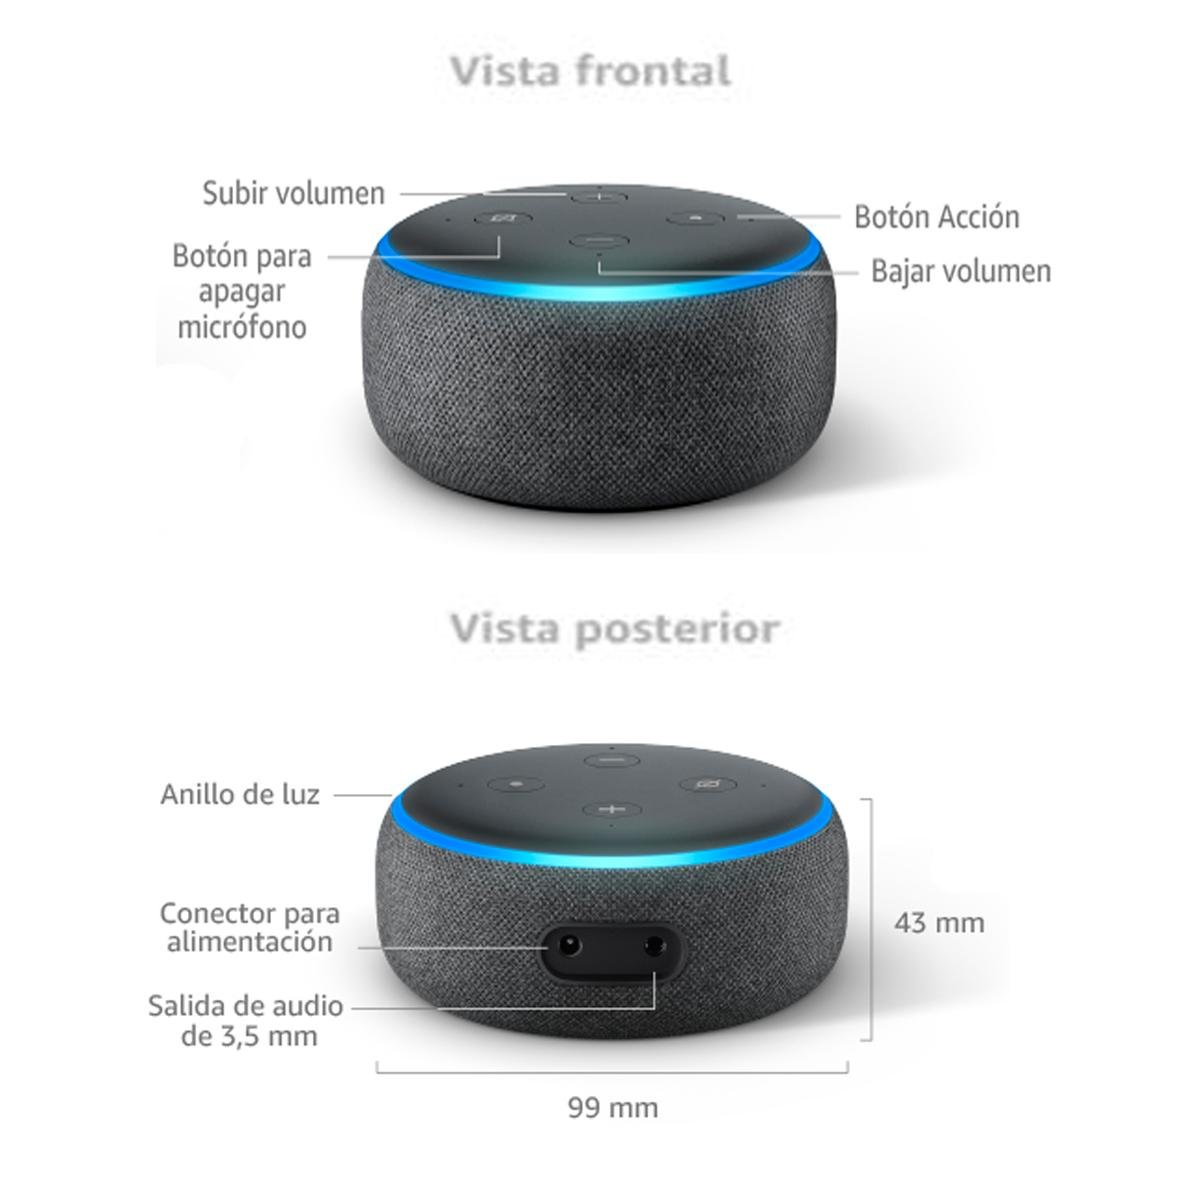 Alexa Echo Dot 3ra generación